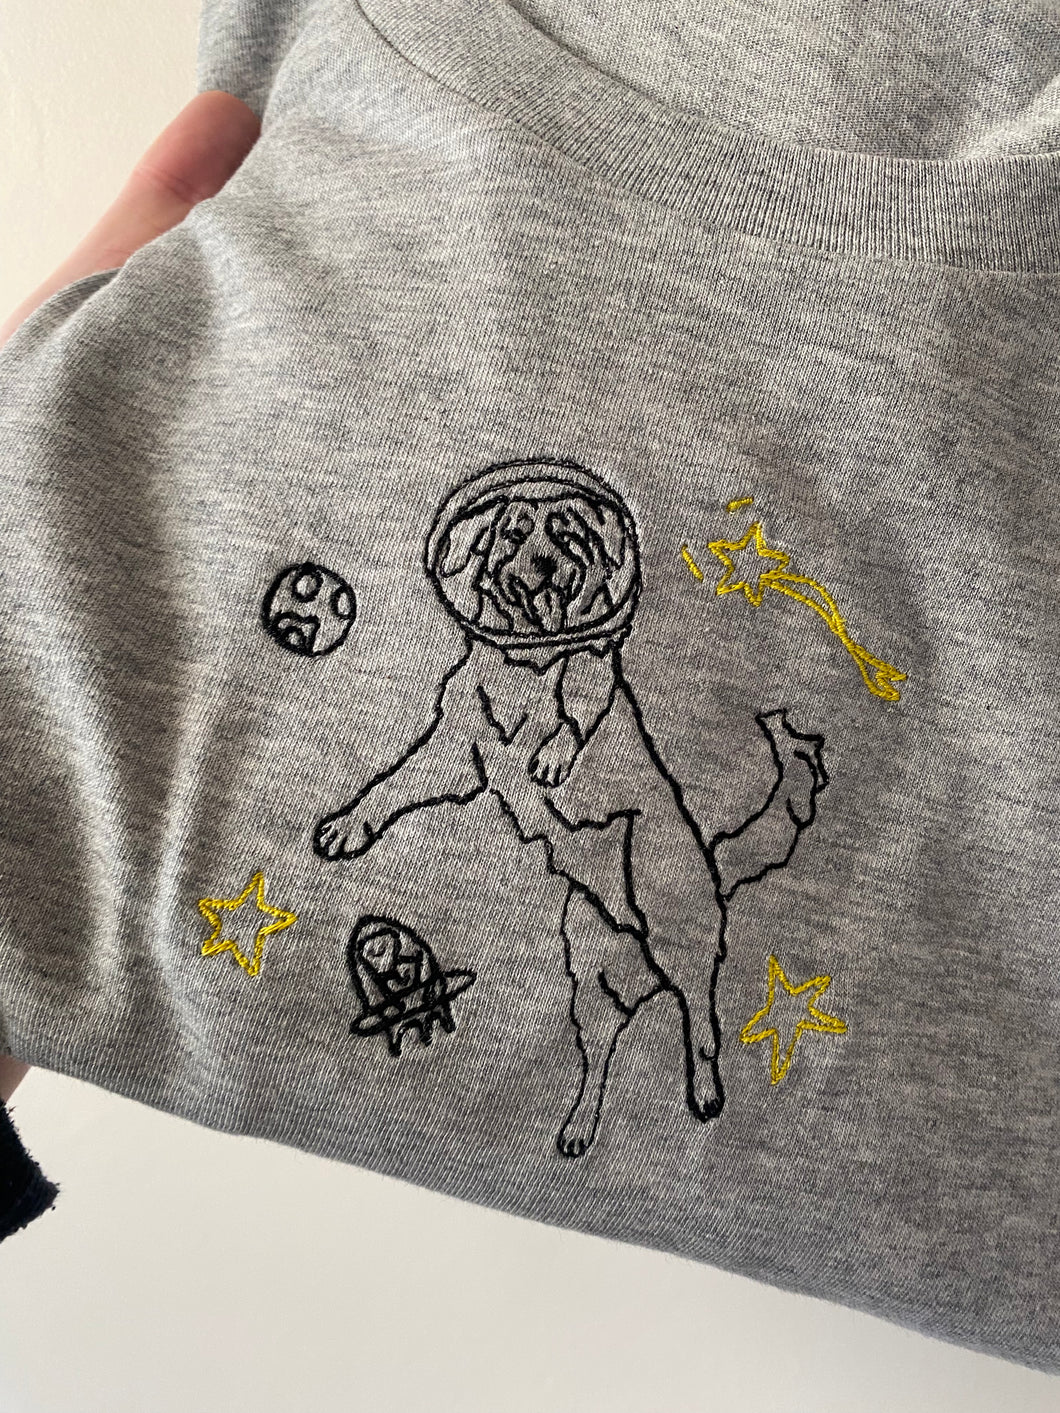 Intergalactic Dogs Sweatshirt - Space Golden Retriever